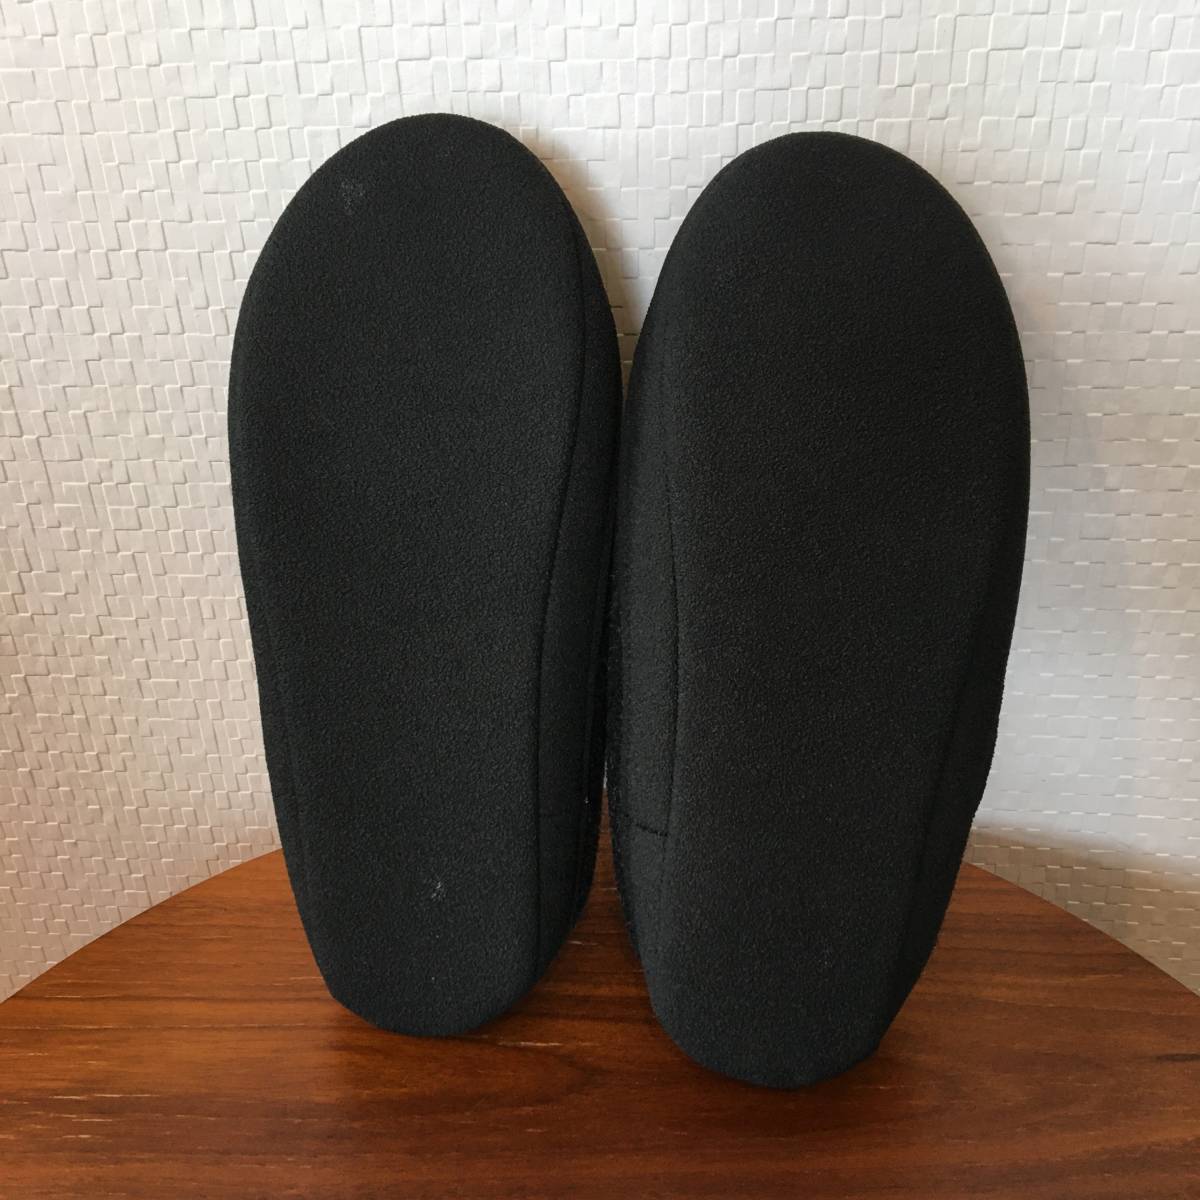 M размер ( женский )ltokTOKU Est nia темно-серый салон надеть обувь салон обувь тапочки Ram шерсть материалы легкий Северная Европа ( новый товар )( стандартный товар )